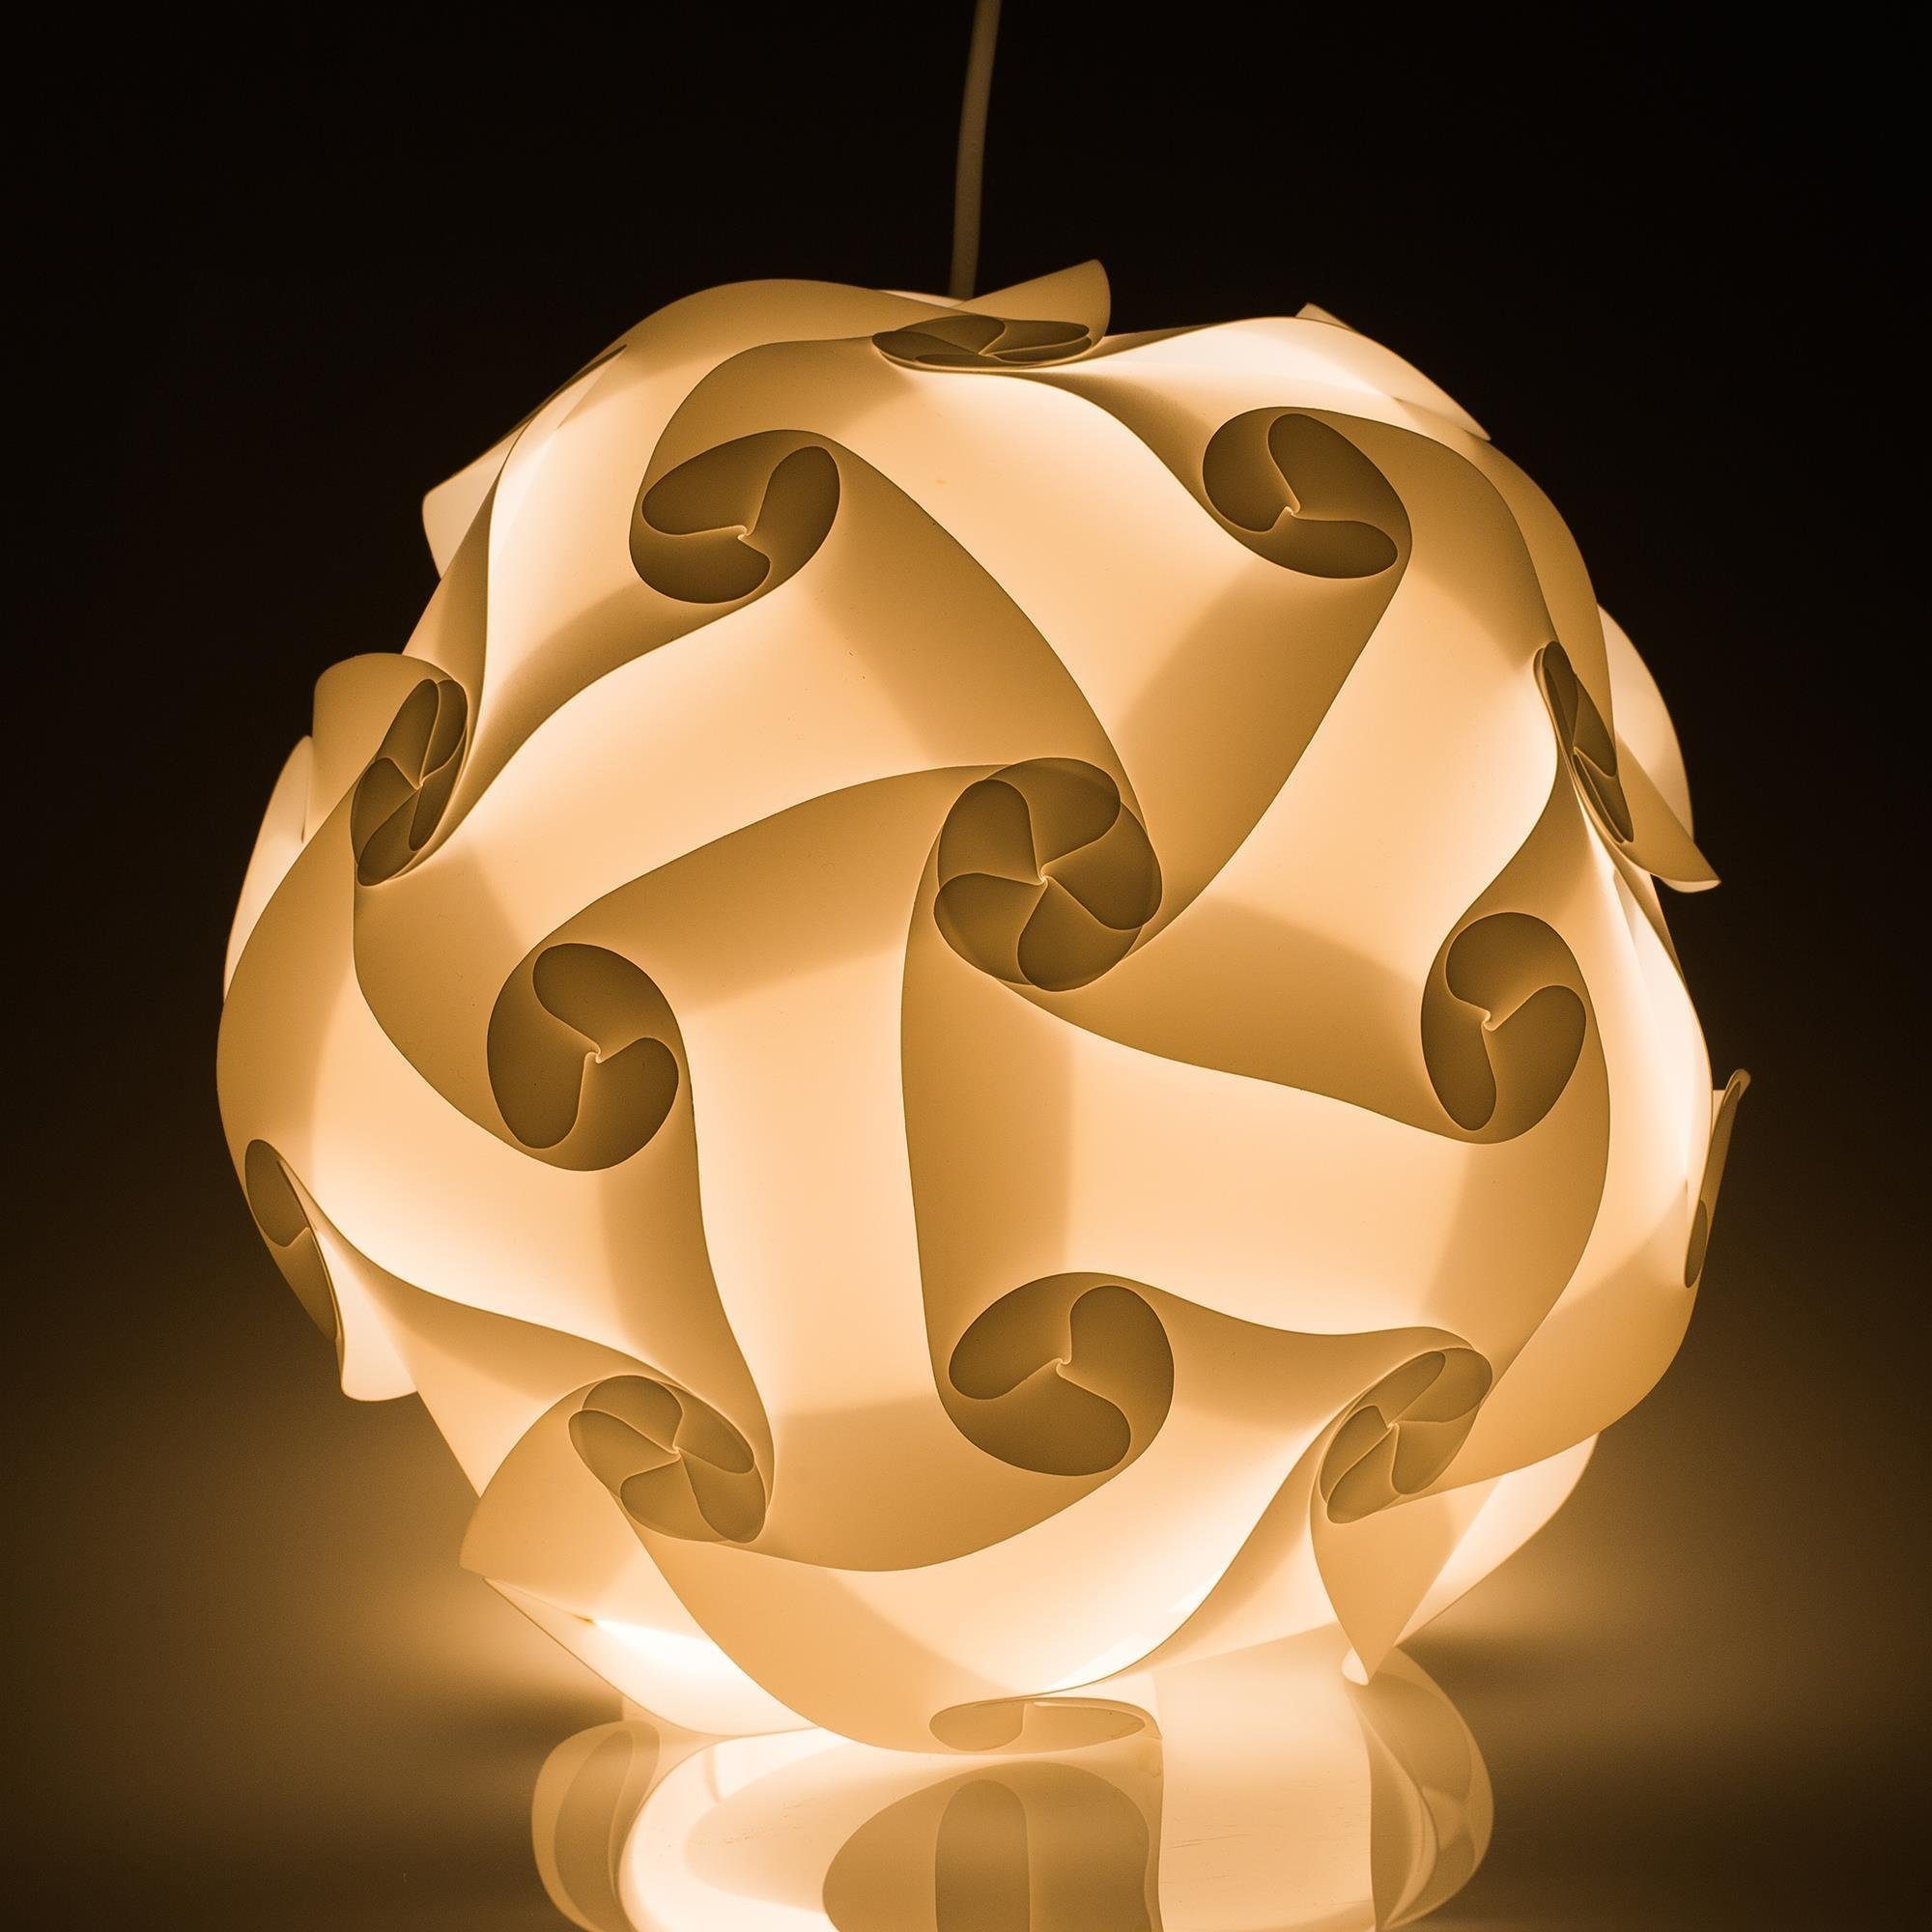 EAZY CASE Lampenschirm DIY Schirm DIY cm XL Lampenschirme, 15 Puzzle DIY Designs Stehlampe 42 Puzzle Lampenschirm Lampe